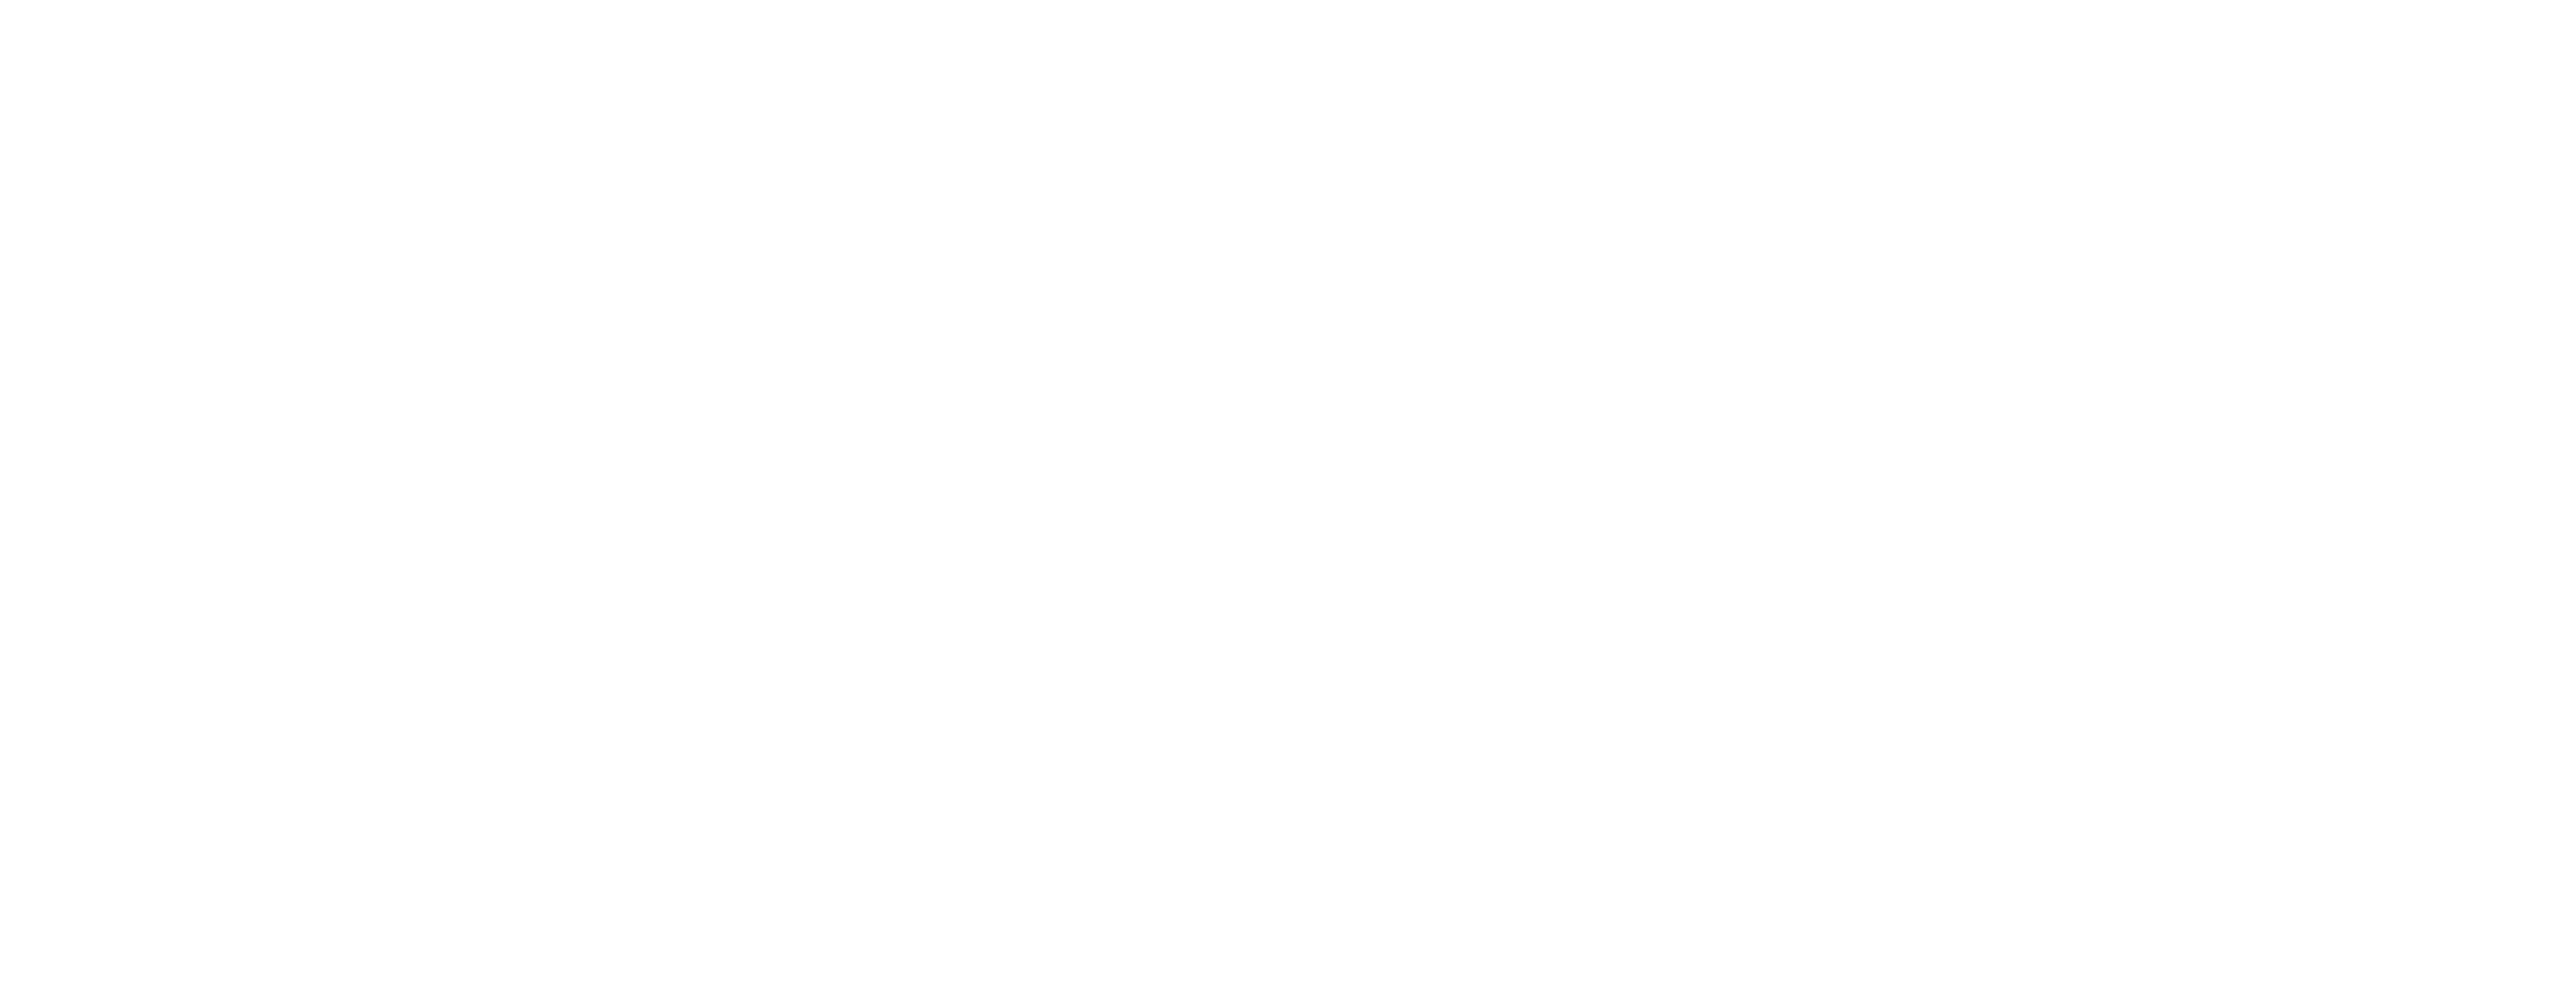 Colegio de Arquitectos Distrito 2 Rosario